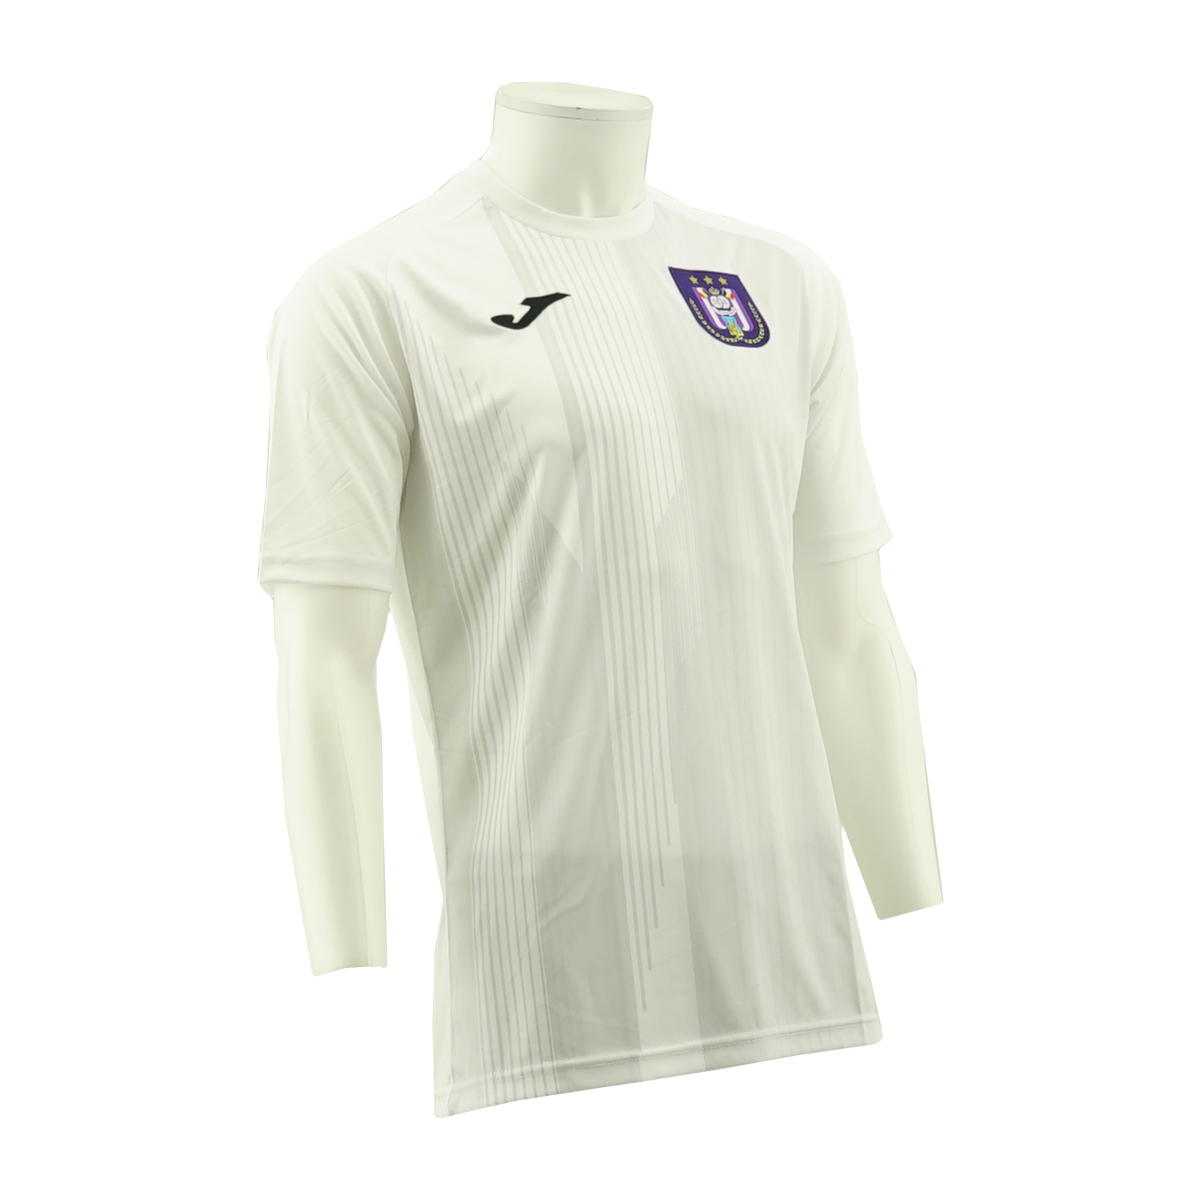 RSCA Pre-Match Shirt 2020/2021